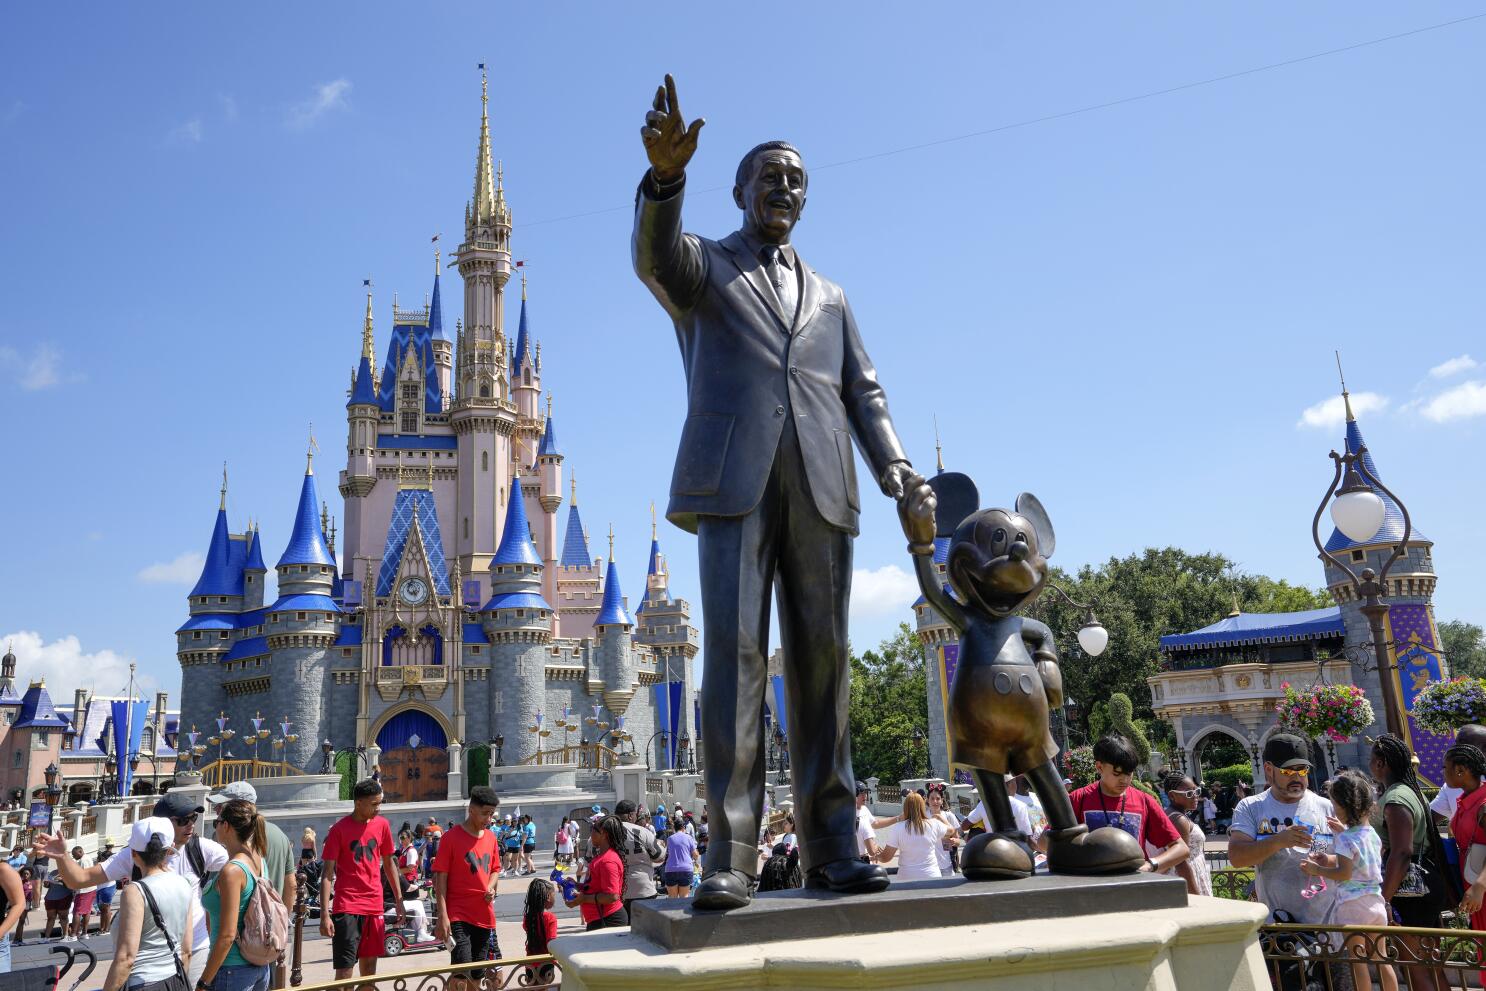 Estados Unidos mujer murió tras comer en restaurante de Disney World: el  parque enfrenta demanda, Noticias hoy